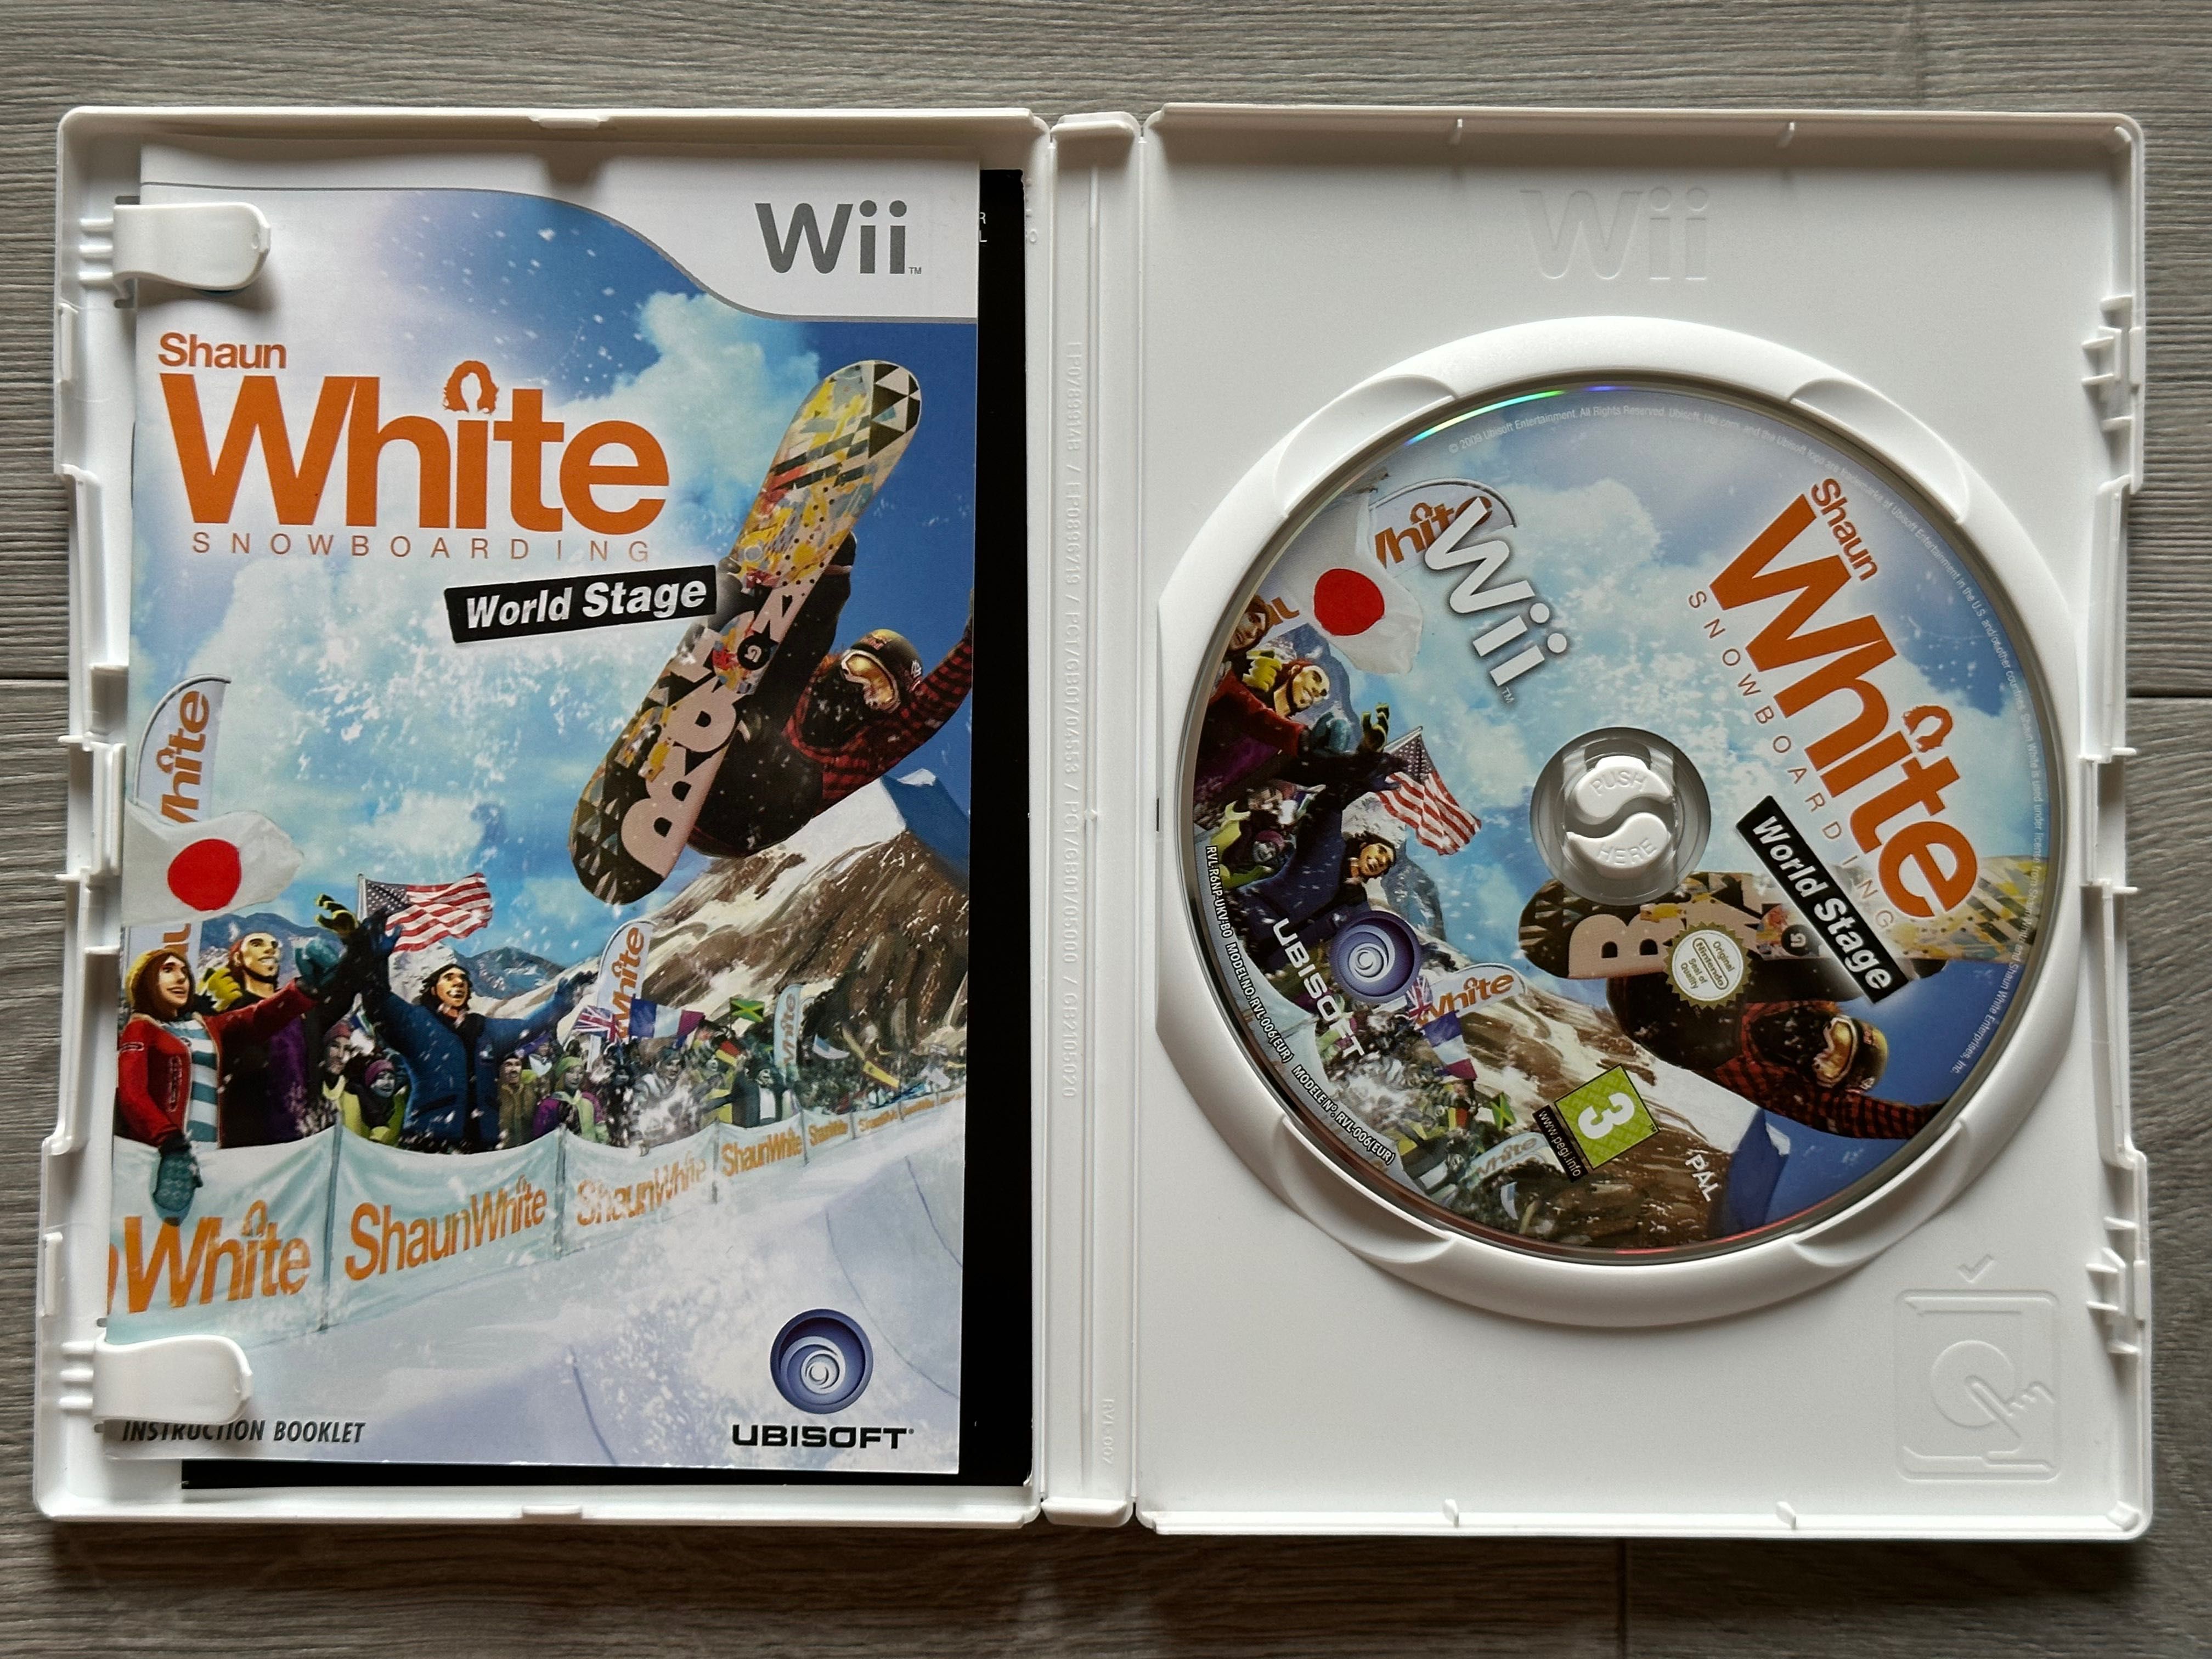 Shaun White Snowboarding: World Stage / Wii